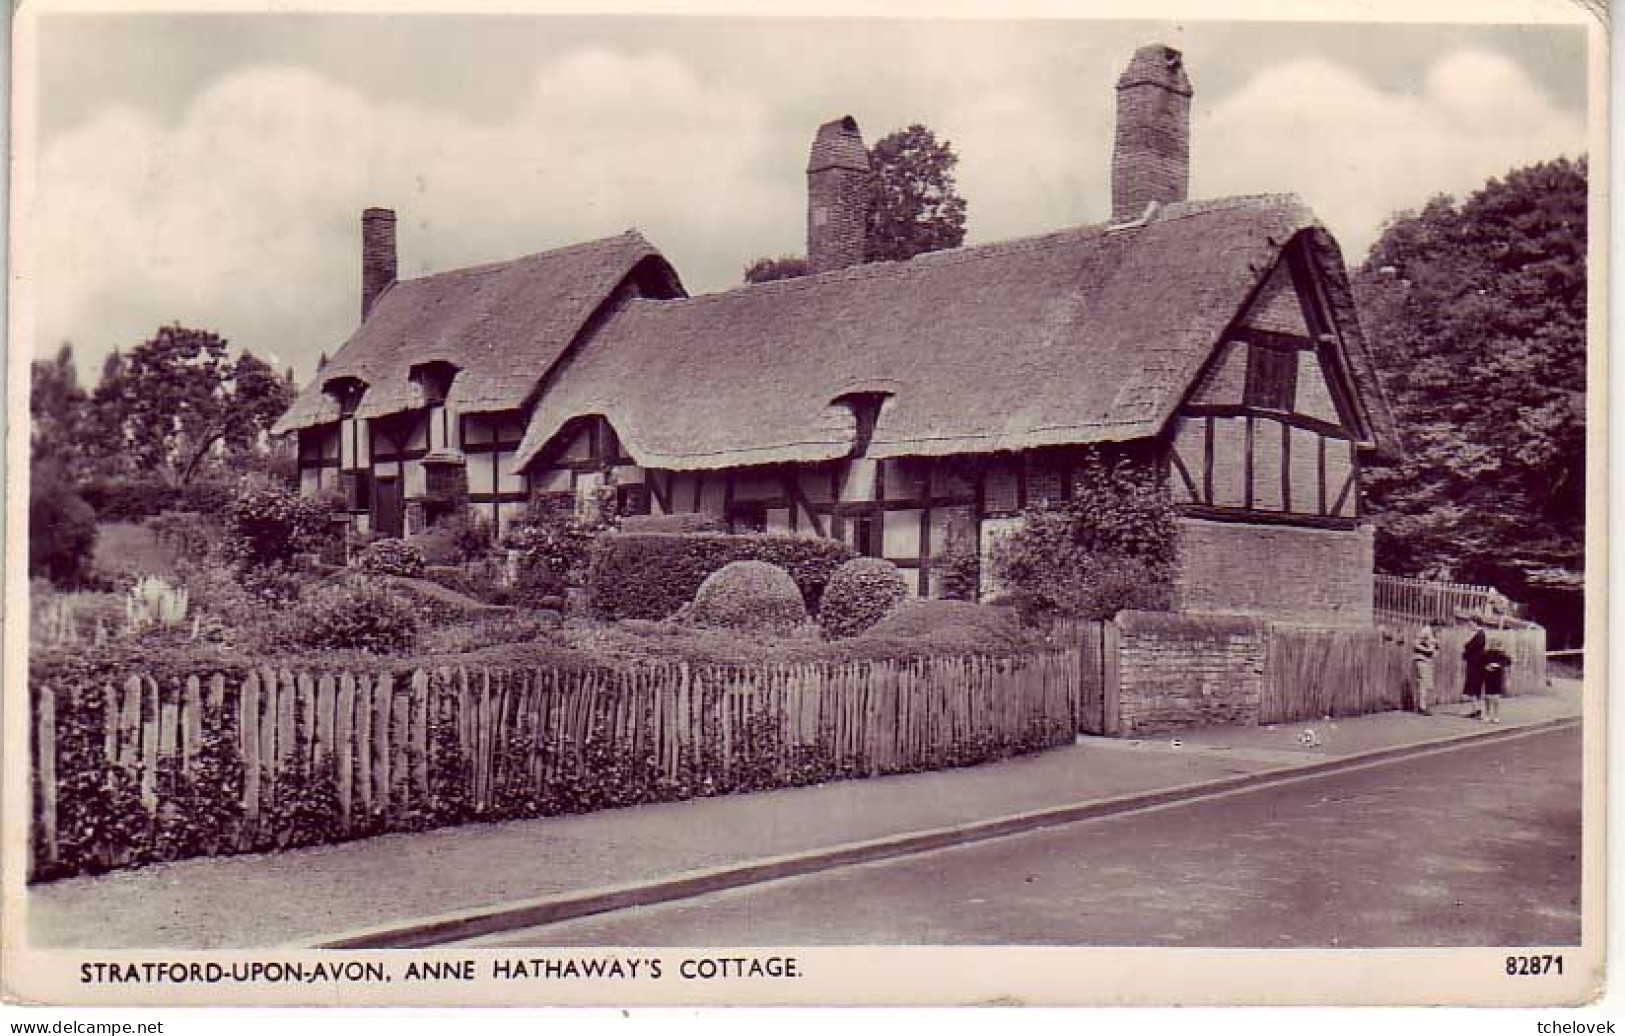 (99). GB. Warwickshire. Stradford Upon Avon (1) & (2) Anne Hathaway's Cottage - Stratford Upon Avon